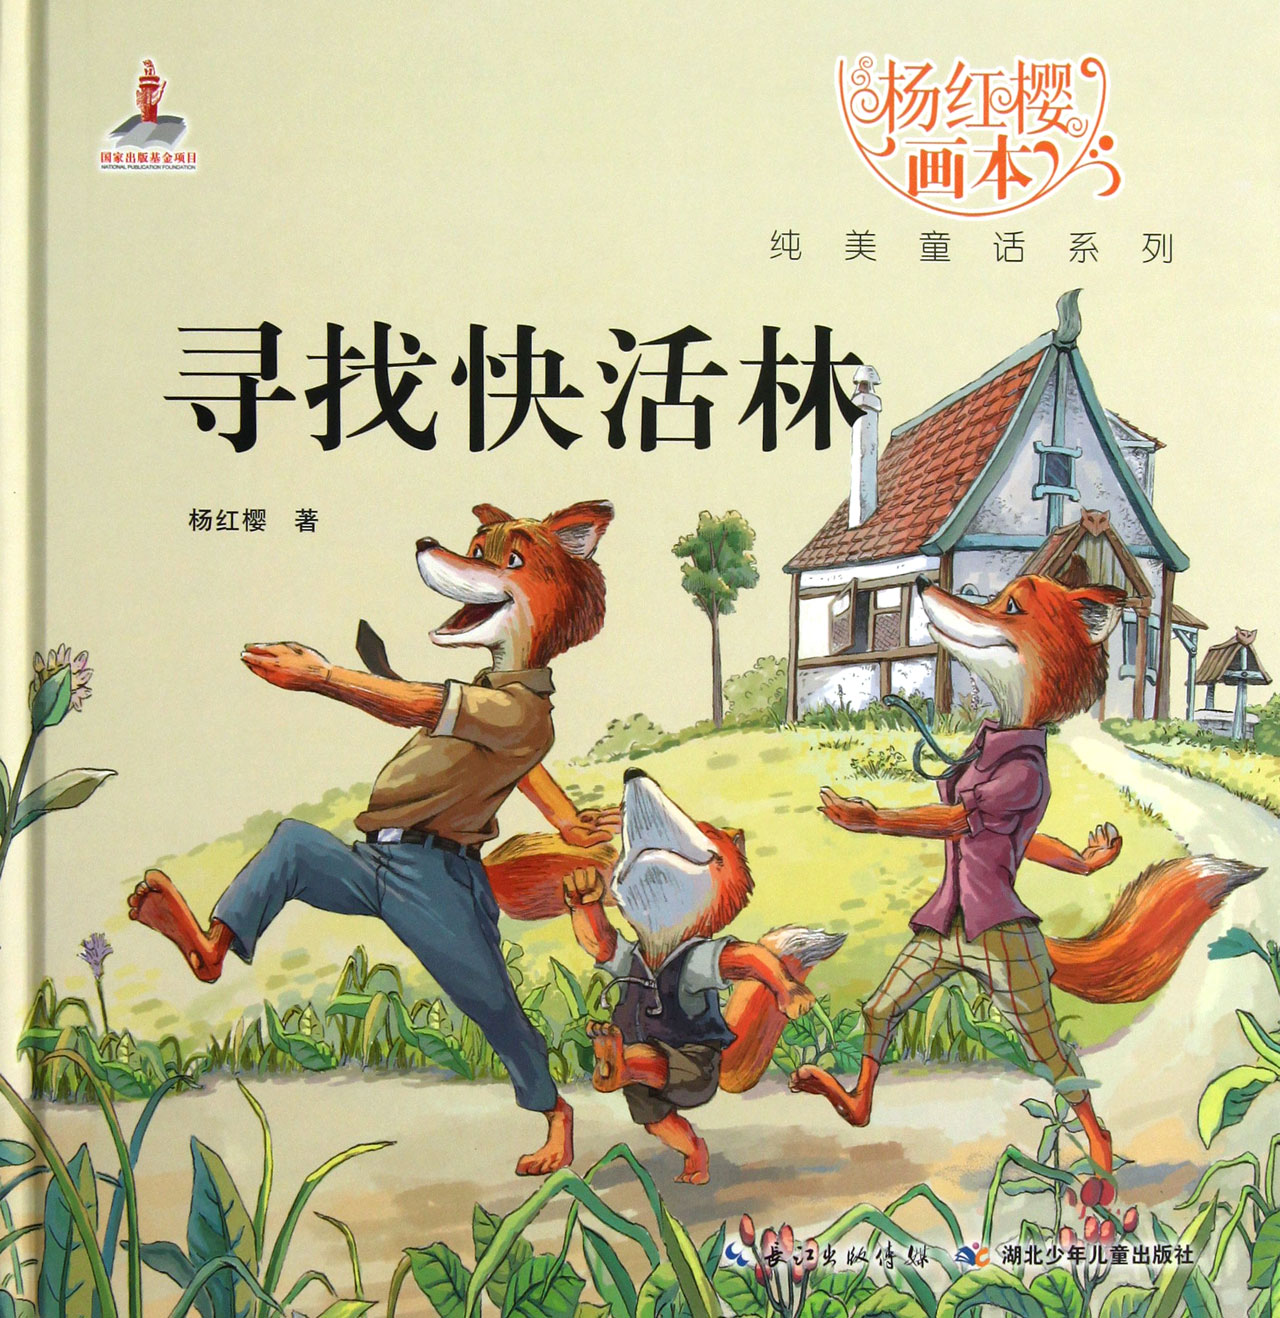 寻找快活林 \/杨红樱-图书杂志-少儿-儿童文学 | 